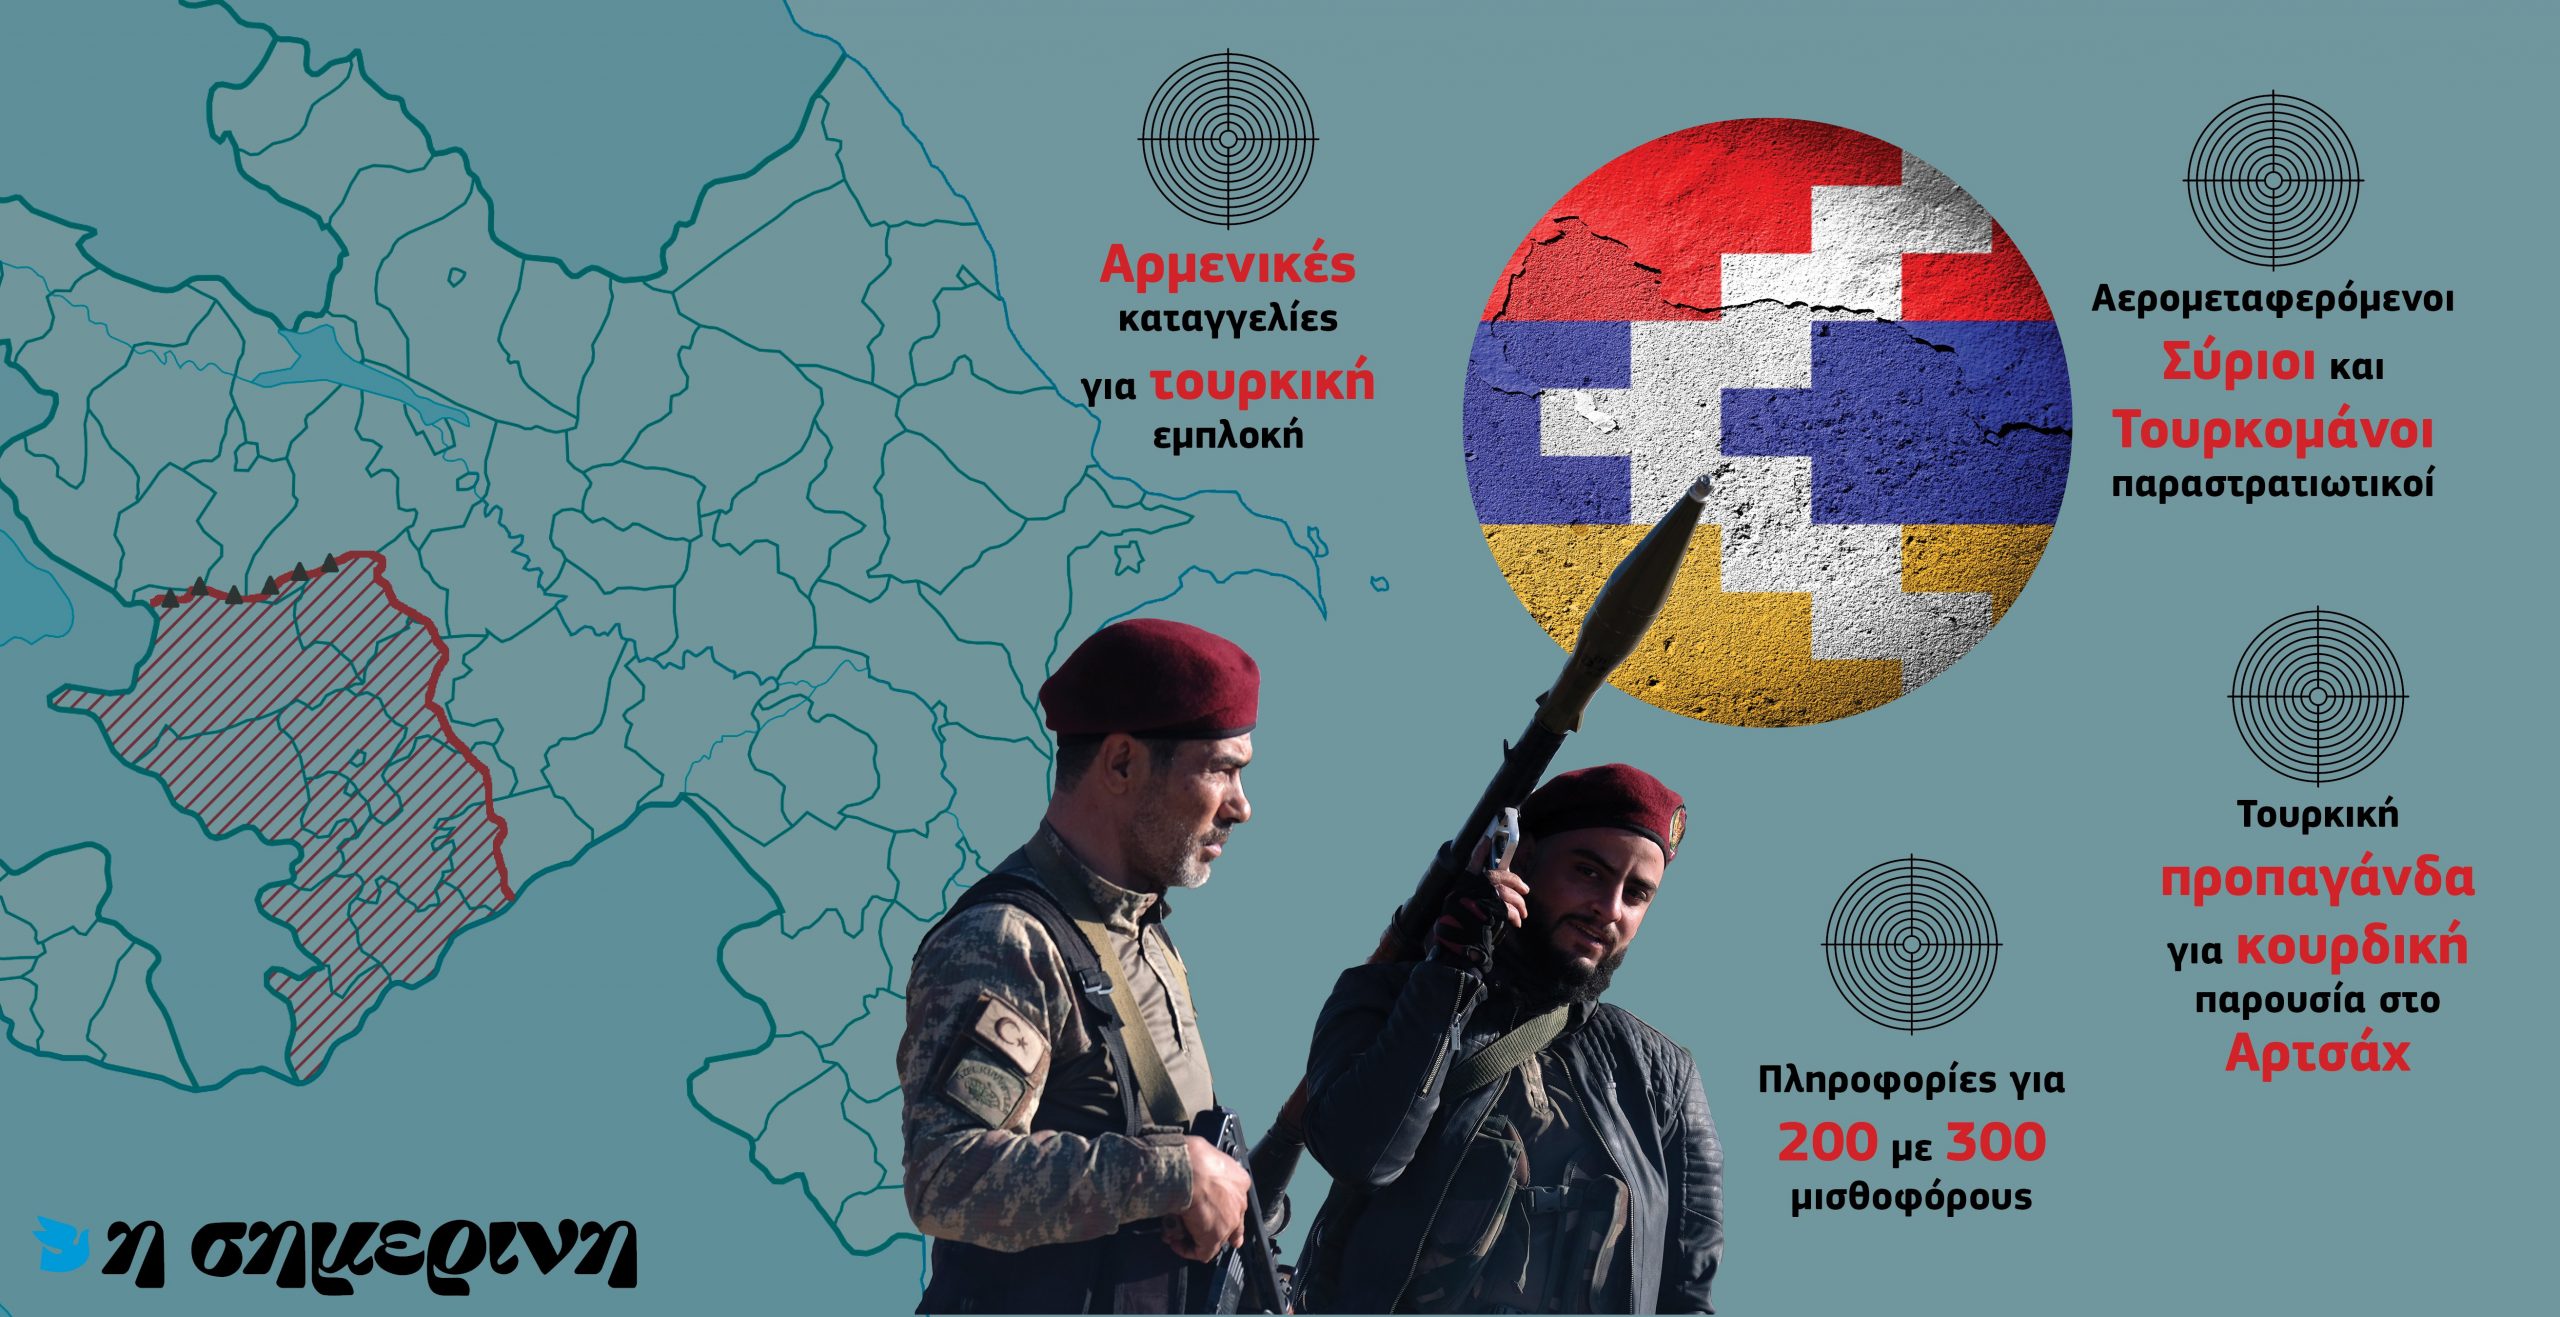 Η Τουρκία έχει μεταφέρει Σύρους και Τουρκομάνους μισθοφόρους στο Αζερμπαϊτζάν εναντίον των Αρμενίων